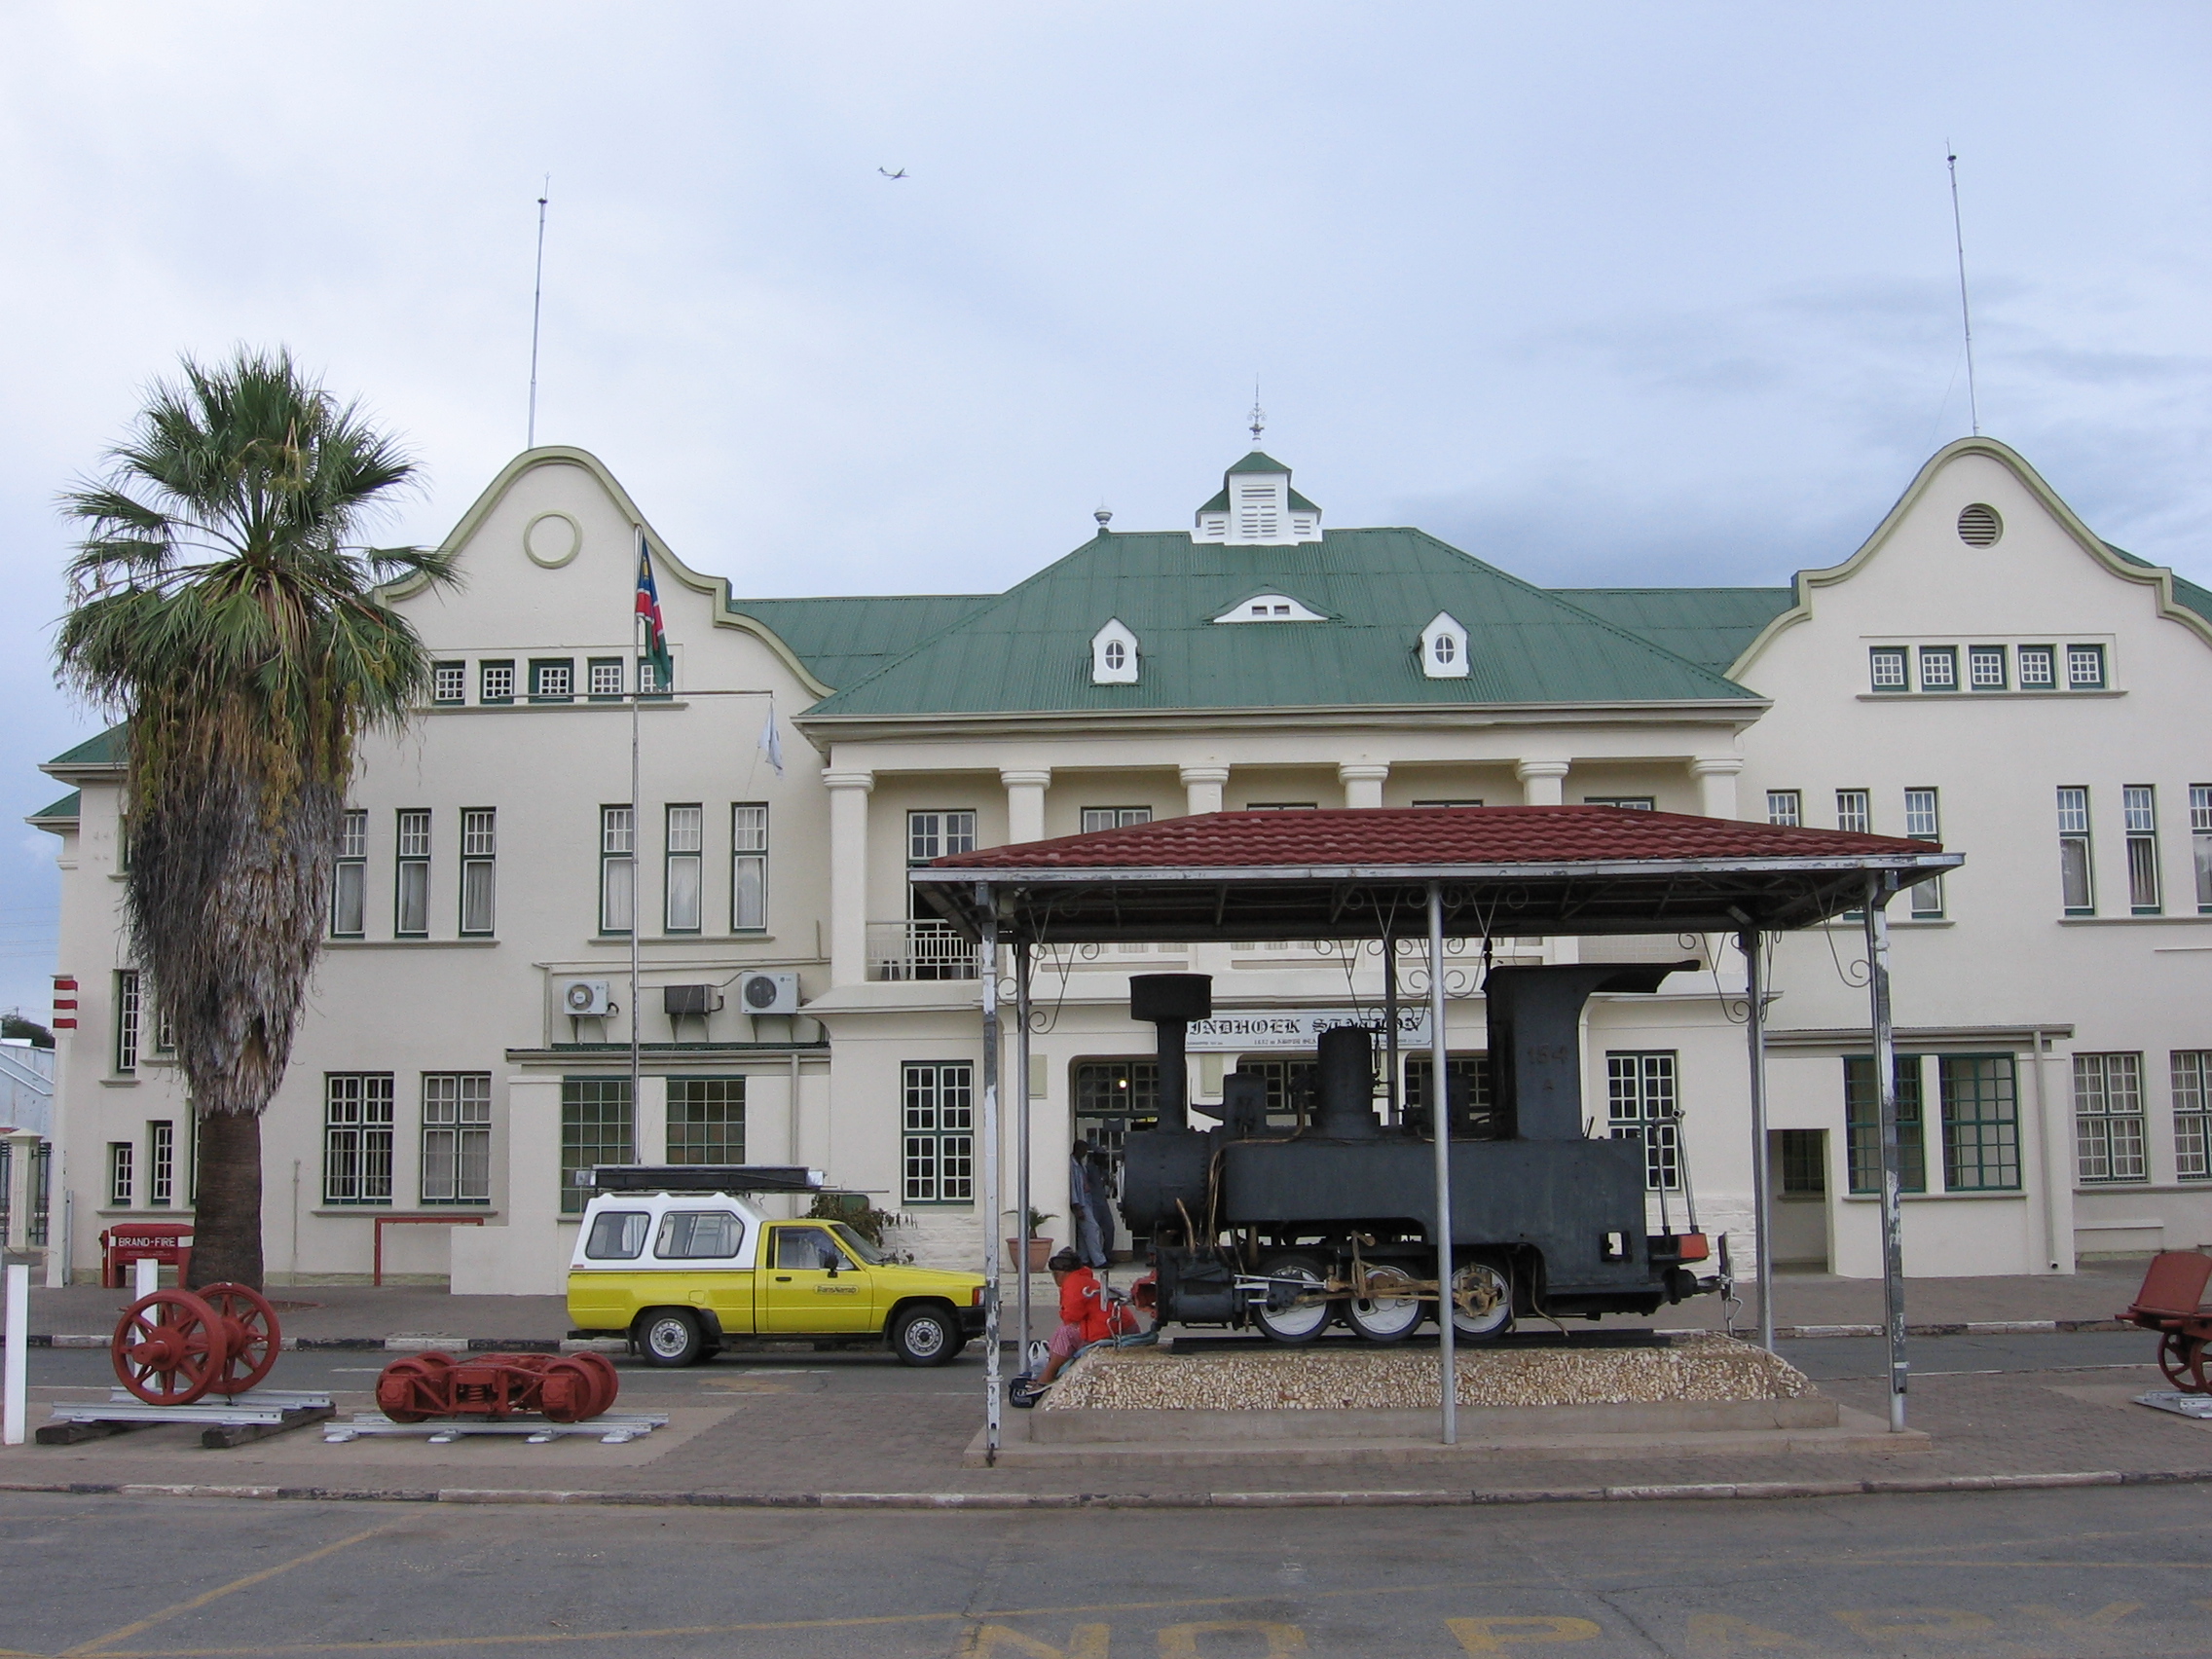 TransNamib Train Station in Windhoek, Namibia